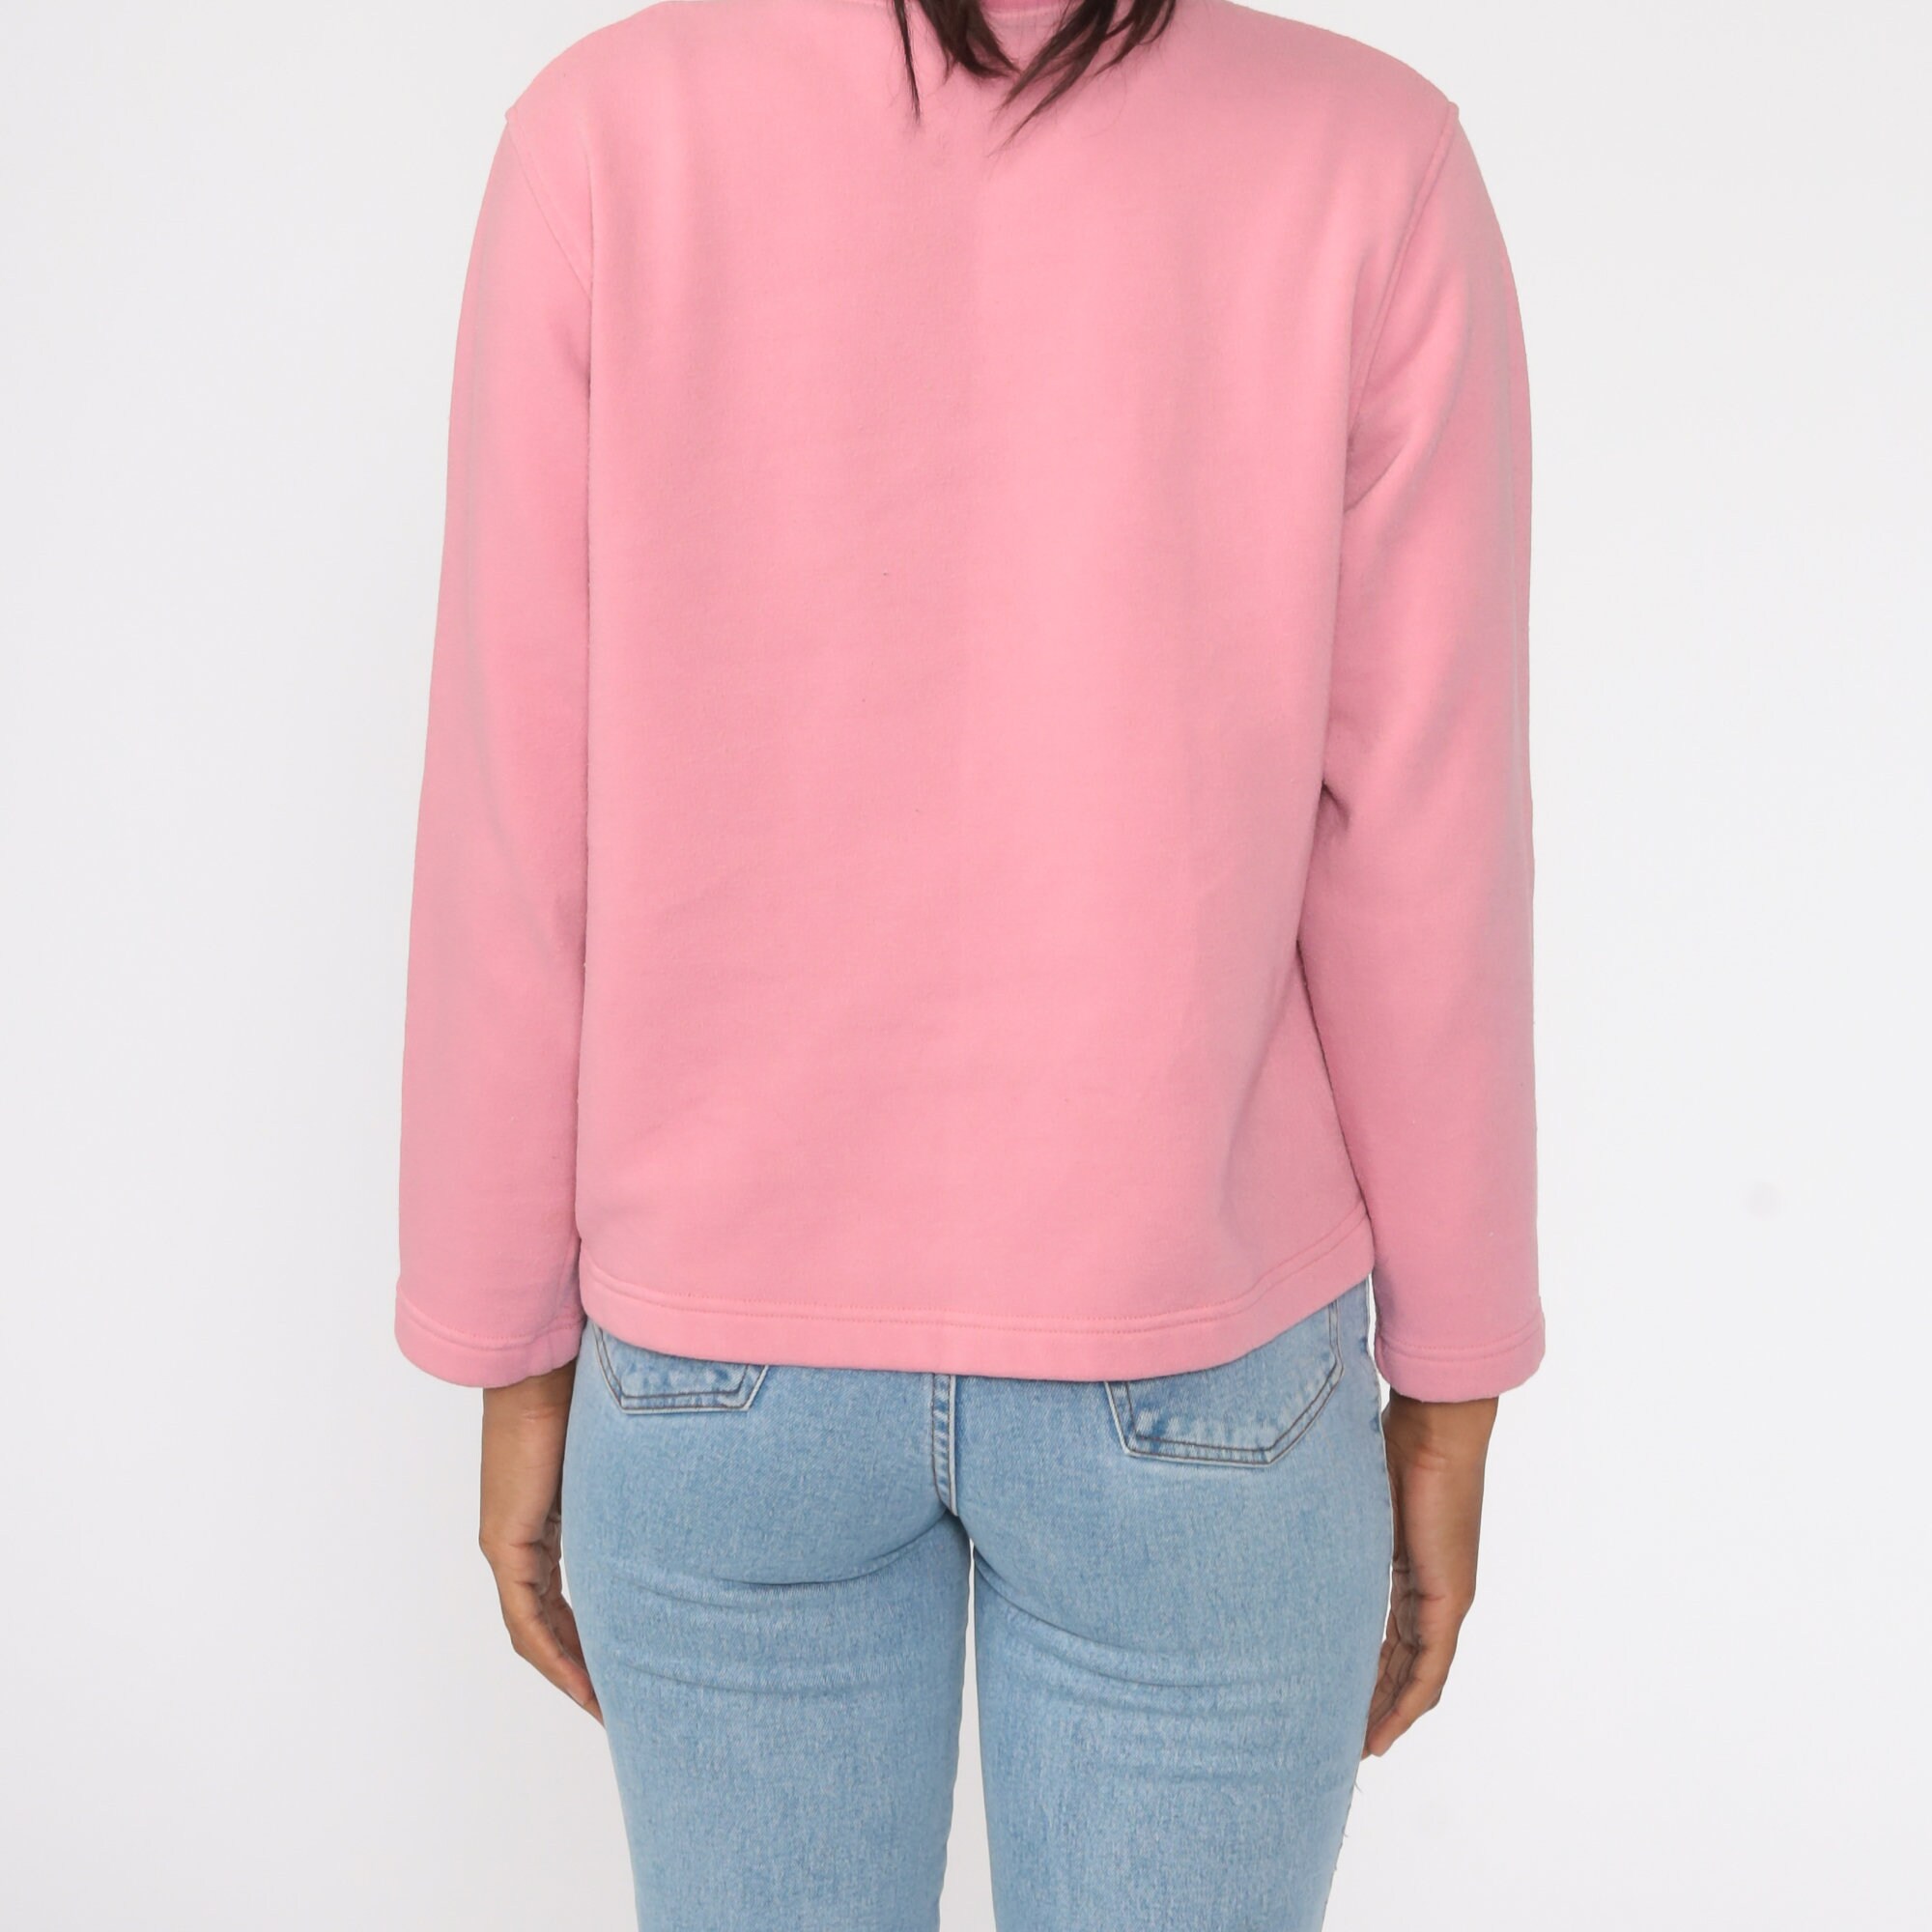 Pink Crewneck Sweatshirt 90s Sweatshirt Oversized Sweatshirt Plain ...